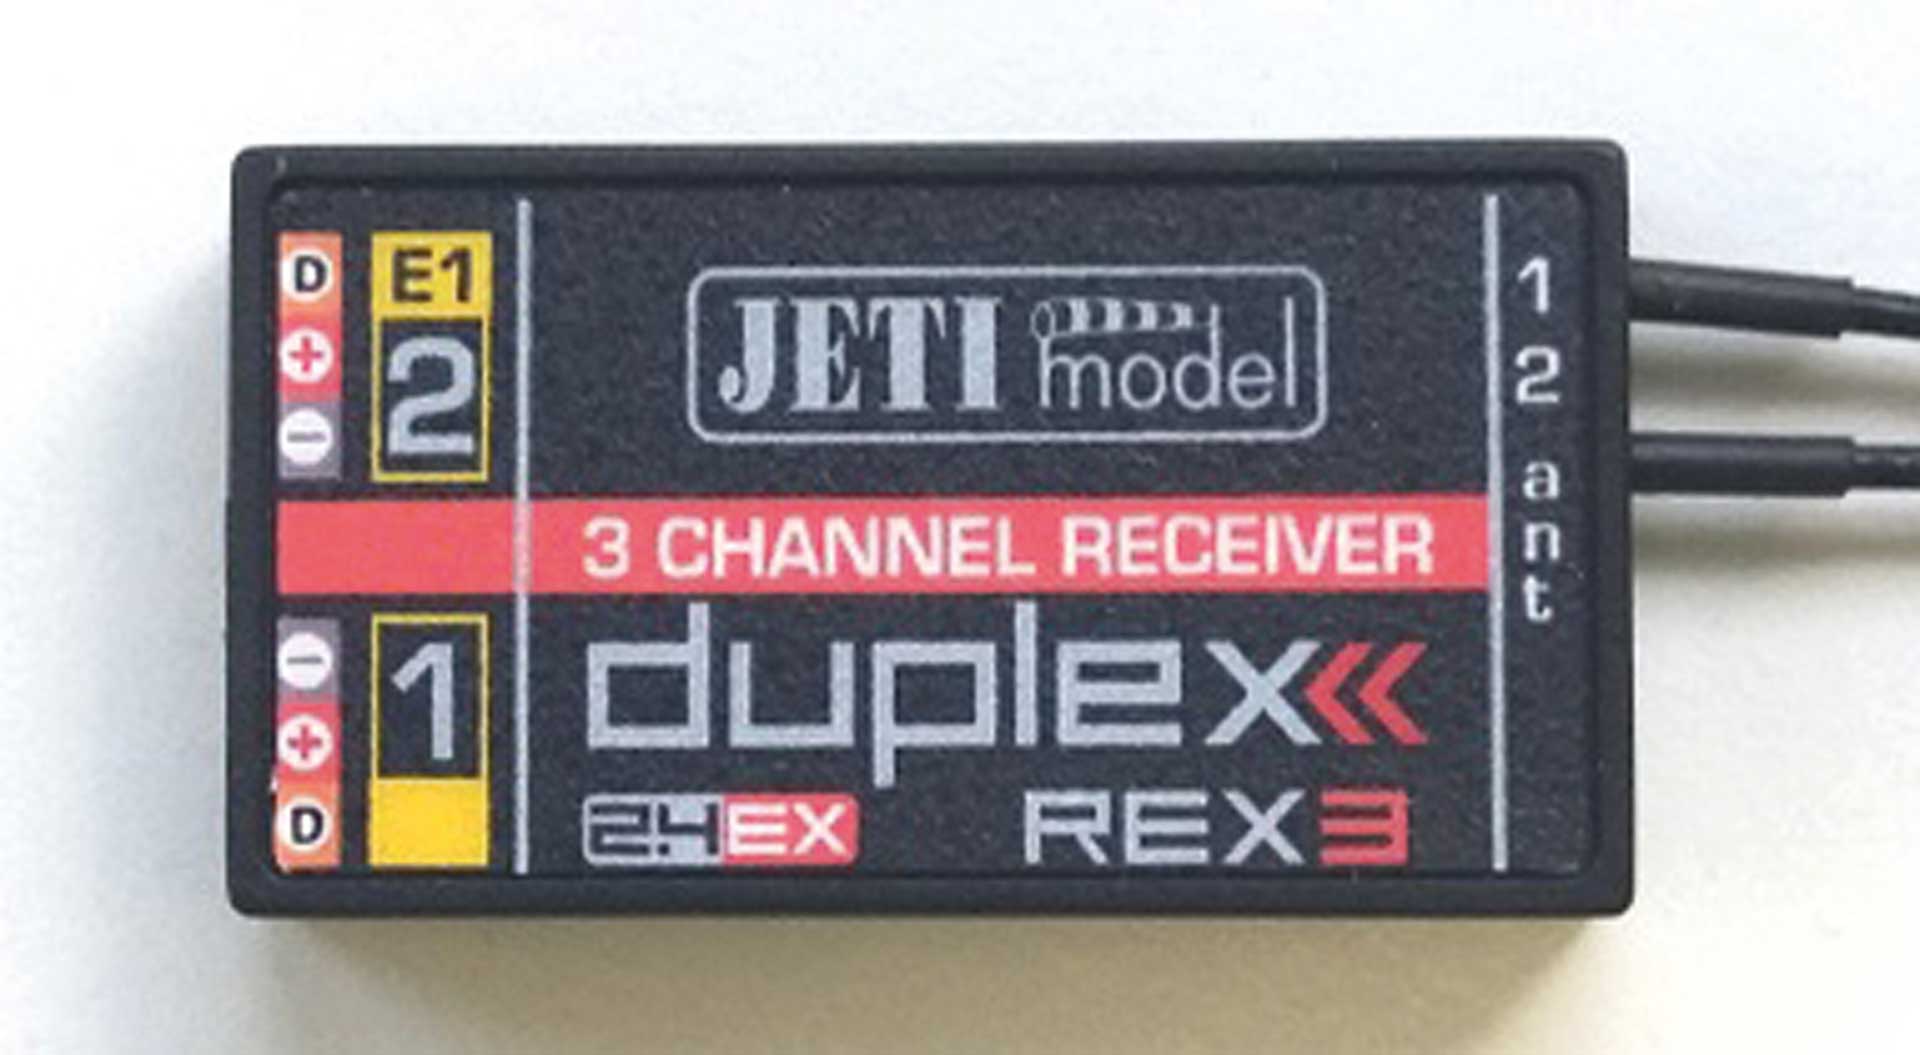 JETI DUPLEX 2.4EX récepteur REX 3 A40